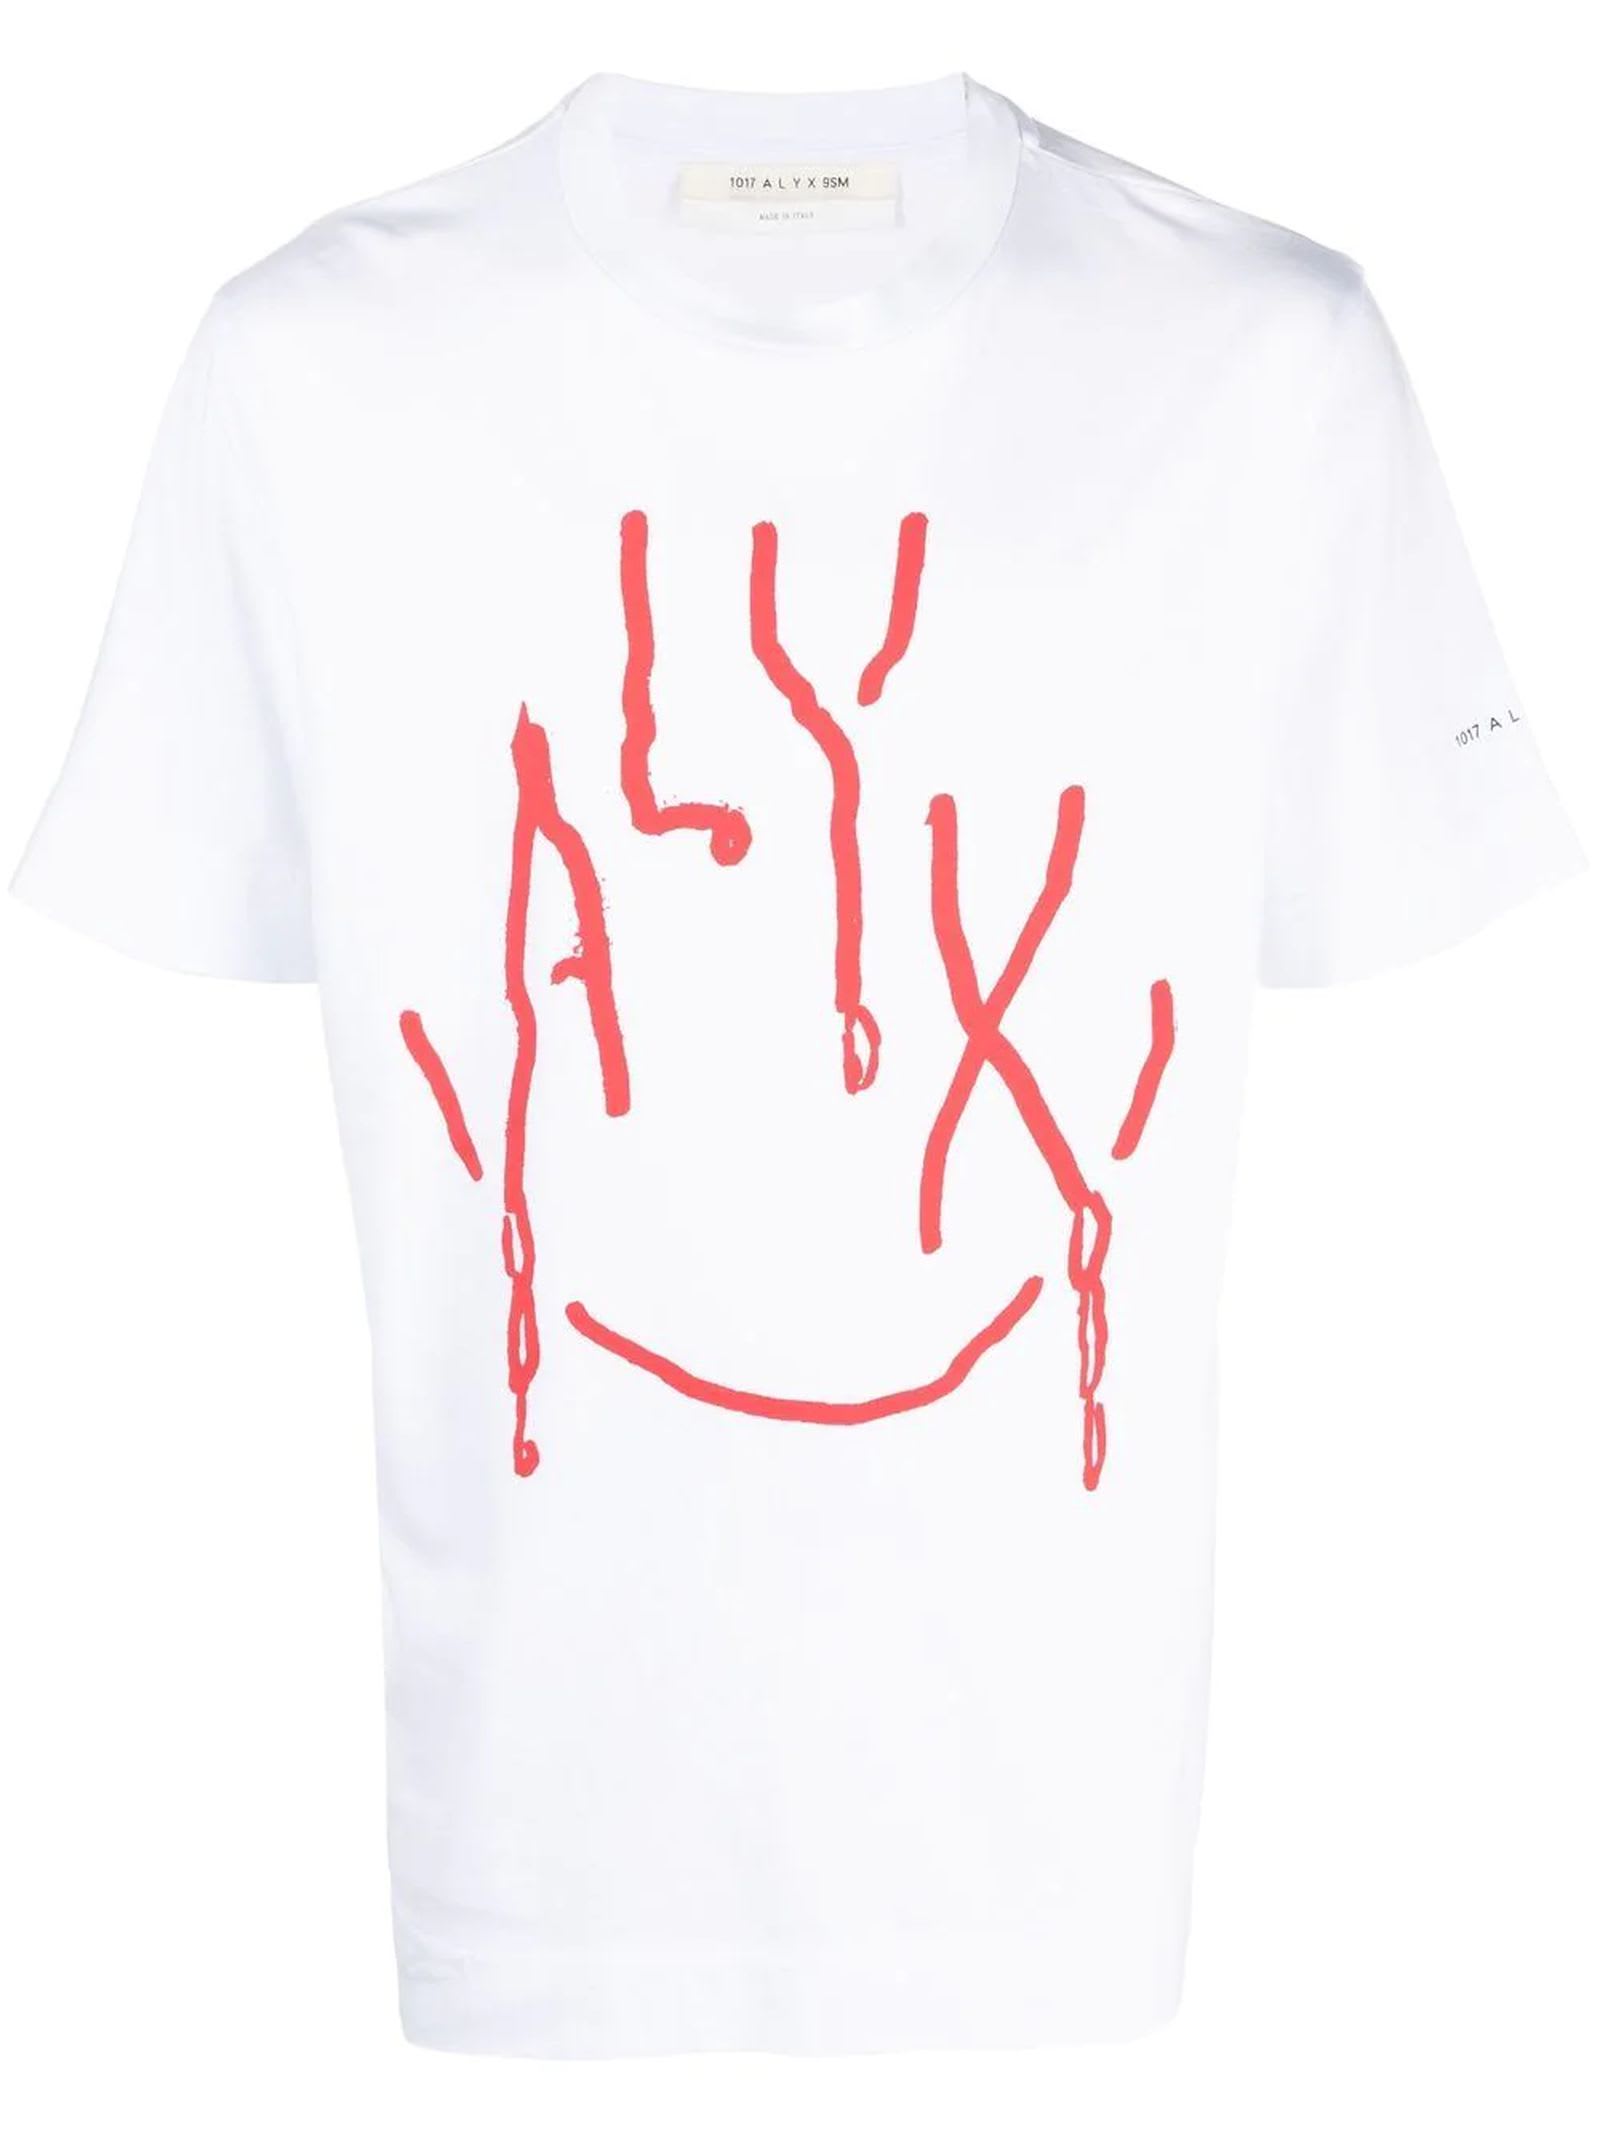 1017 ALYX 9SM White Cotton T-shirt